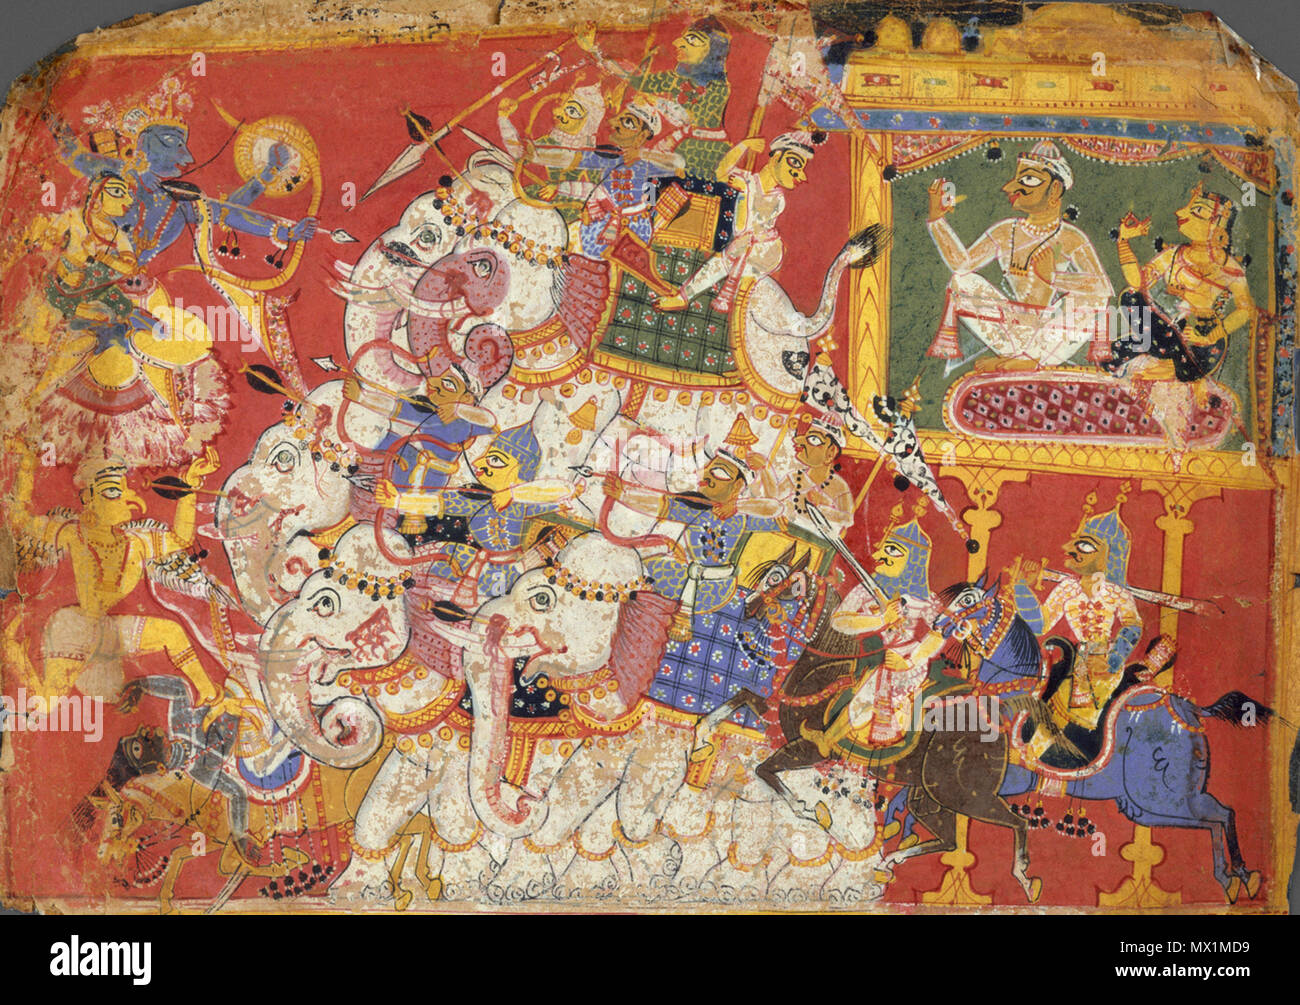 . Krishna Schlachten die Armeen der Dämon Naraka: Seite aus einem verteilten Bhagavata Purana (alte Geschichten von Lord Vishnu) Die Bhagavata Purana beschreibt die Vishnu Avatare (Erscheinungsformen), Krishna, der bedeutendste. Der Dämon Naraka und seine Gemahlin werden angezeigt (oben rechts) sitzen in der befestigten Stadt Pragyotisha. Krishna und seine Gefährtin Satyabhama sind an der oberen linken Reiten auf Garuda (die solar Vogel Berg von Vishnu), "wie eine Wolke mit Blitz oberhalb der Sonne." Die hierarchische Organisation von diesem Gemälde stellt Krishna und Naraka, während das schwankende Elefanten Stockfoto